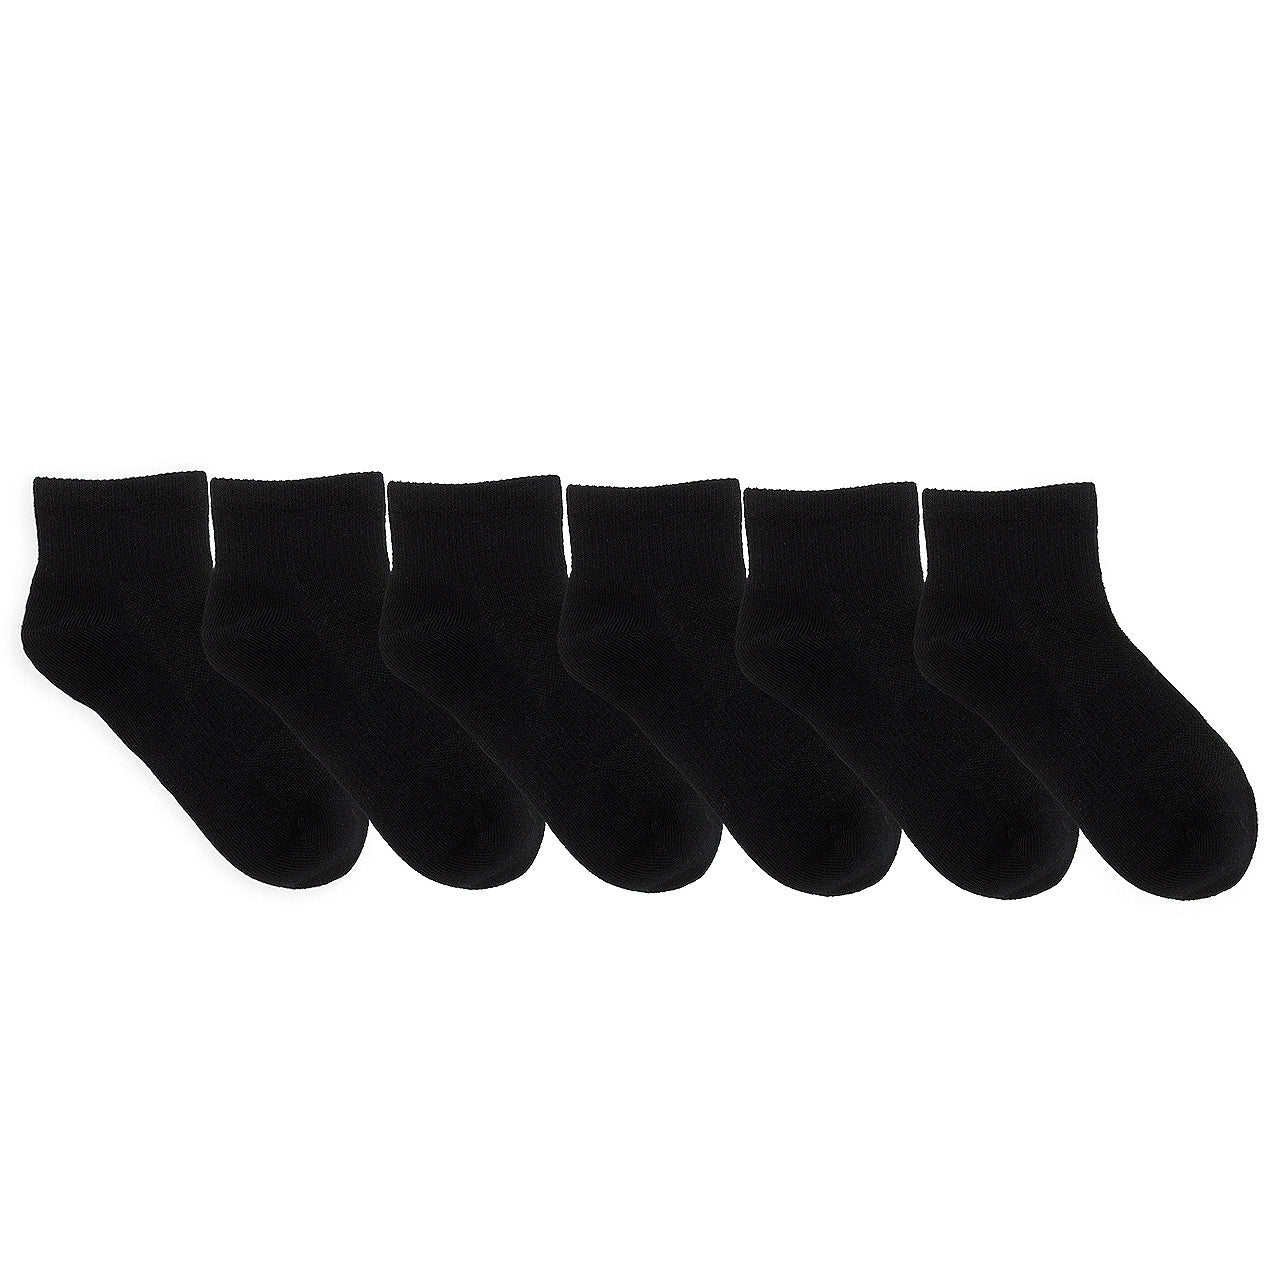 Robeez Quarter Socks 6 pack - Black (Final Sale)